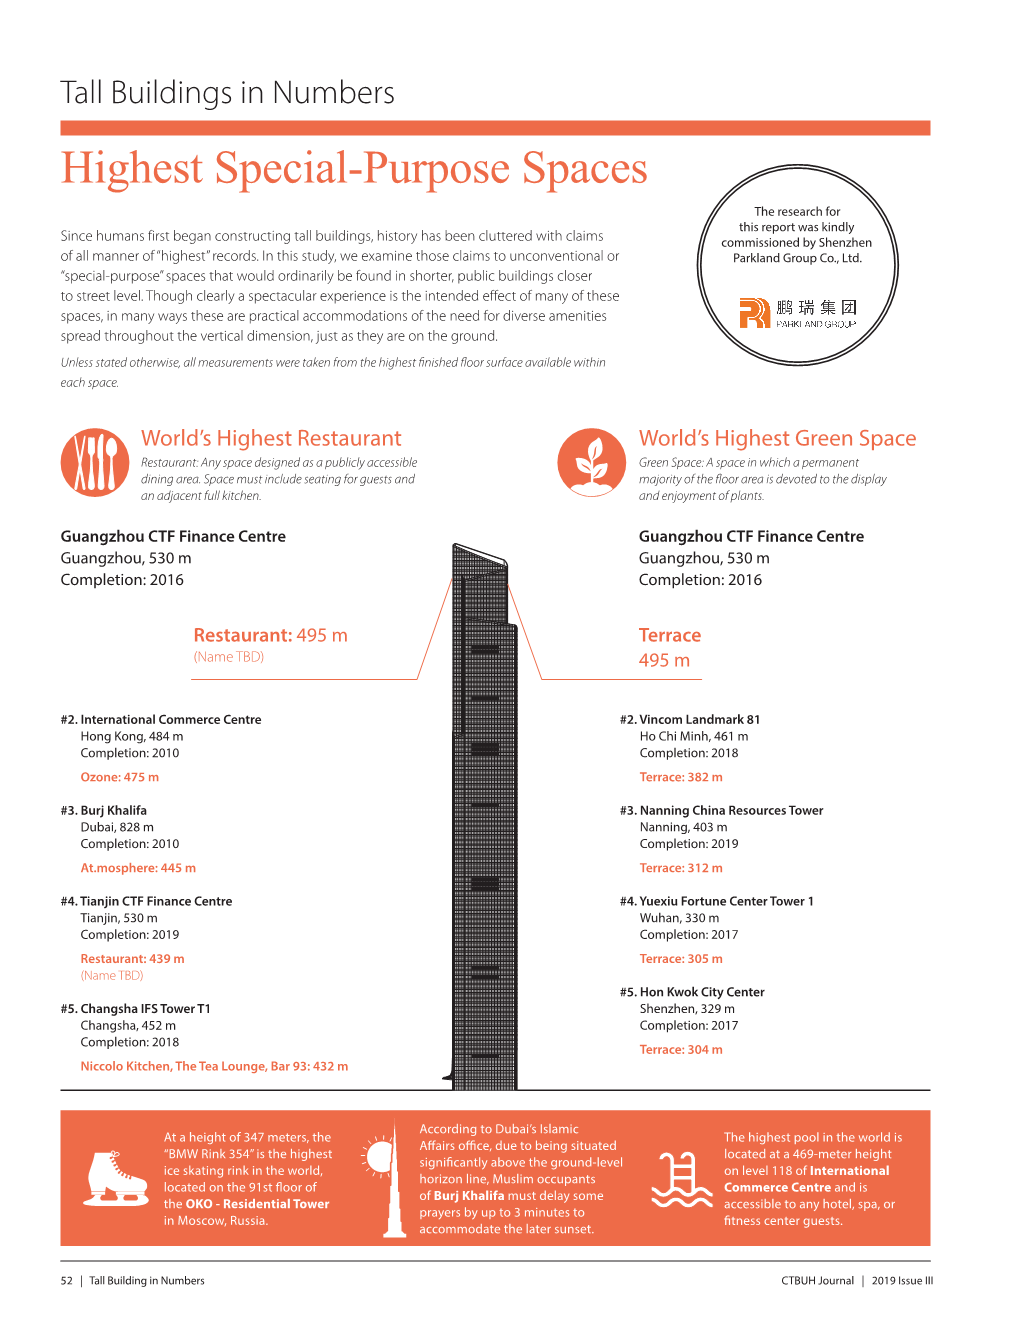 Highest Special-Purpose Spaces